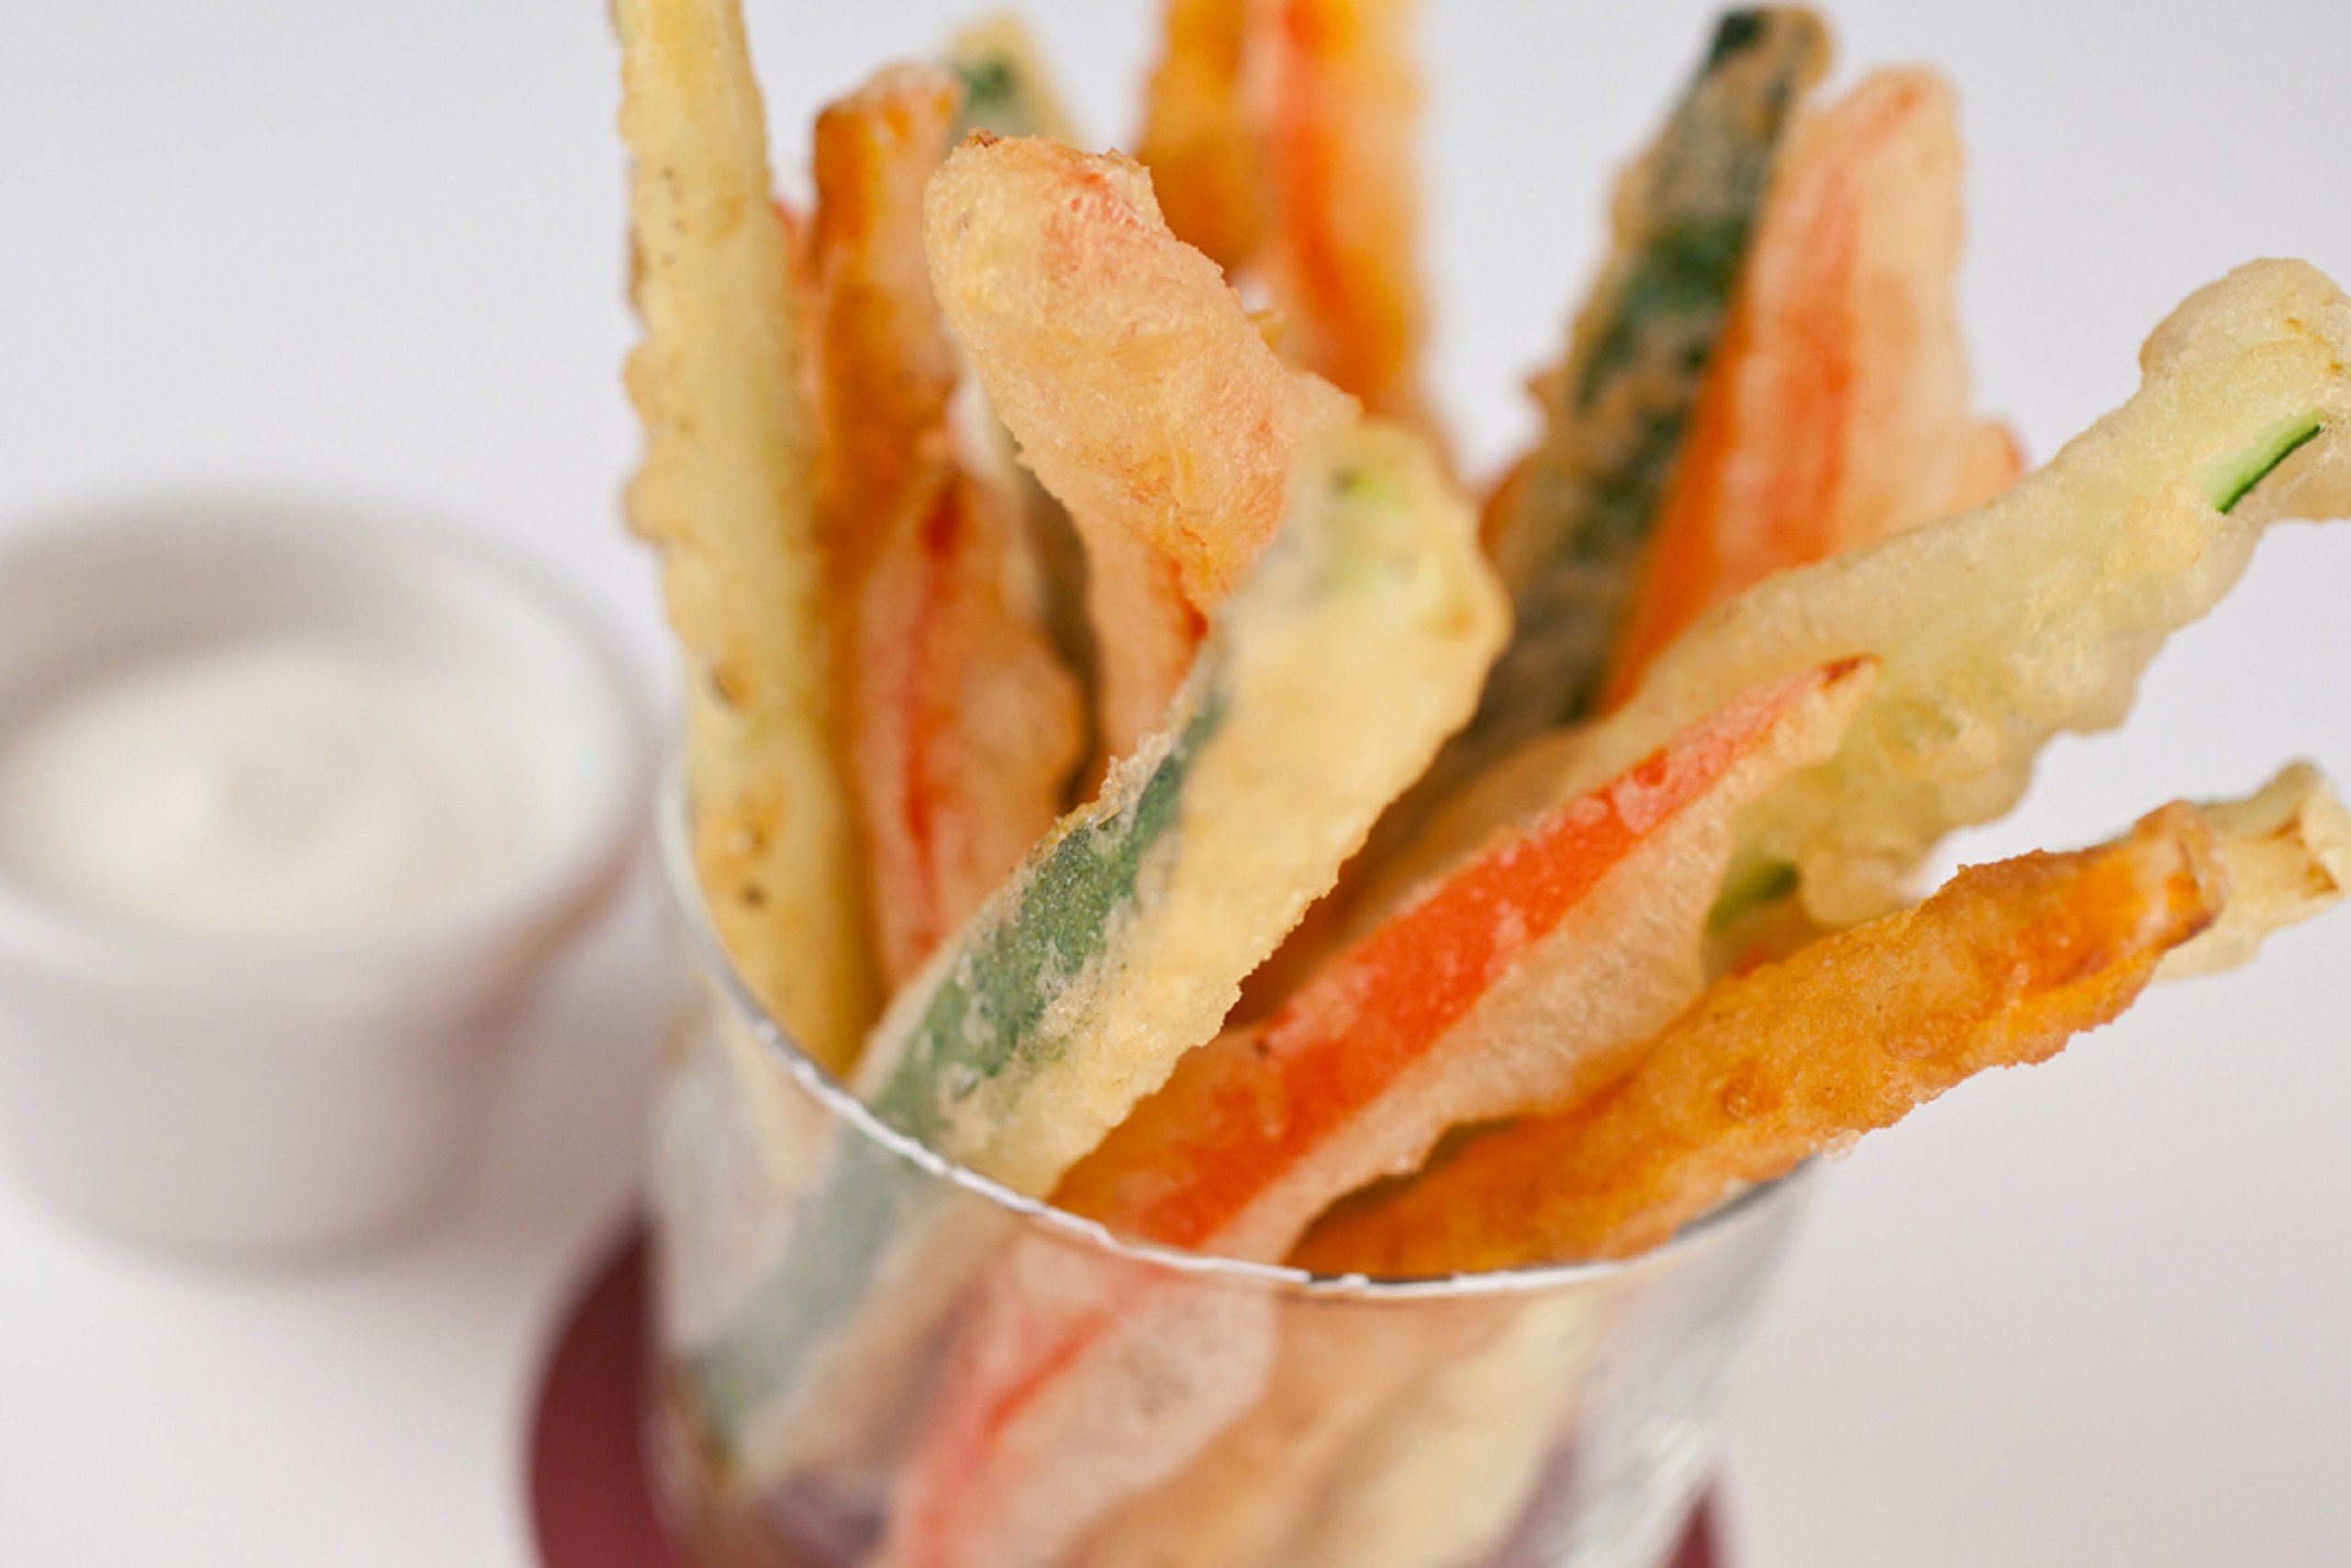 Arriba la novetat congelada de Mercadona: tempura de verdures feta a Barcelona